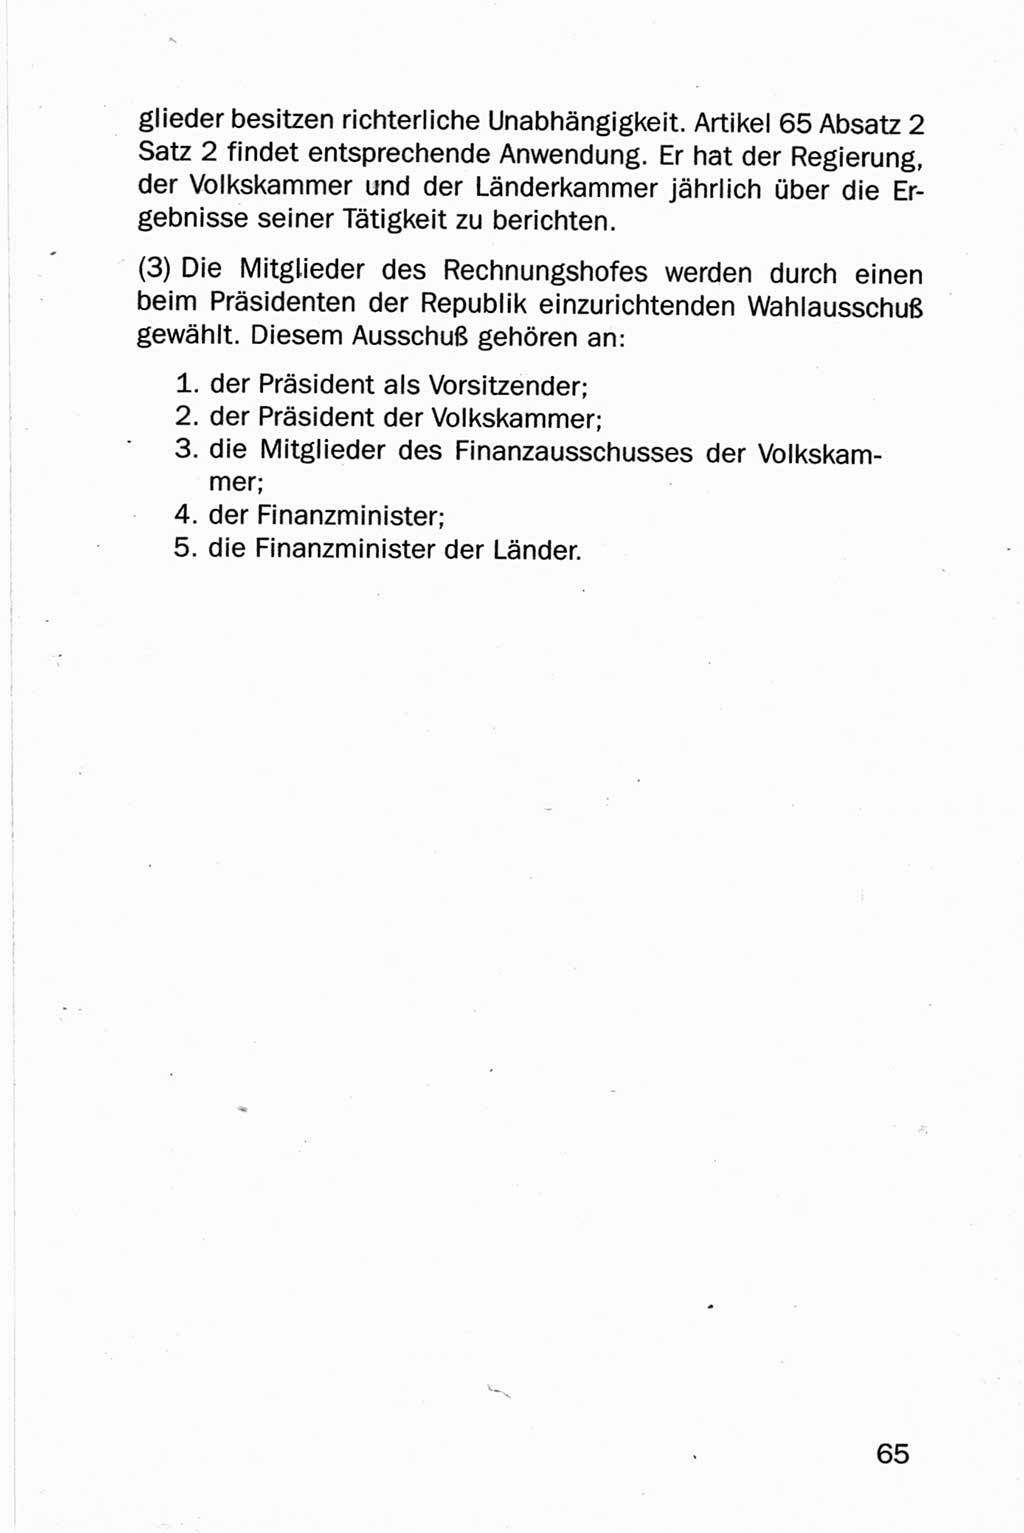 Entwurf Verfassung der Deutschen Demokratischen Republik (DDR), Arbeitsgruppe "Neue Verfassung der DDR" des Runden Tisches, Berlin 1990, Seite 65 (Entw. Verf. DDR 1990, S. 65)